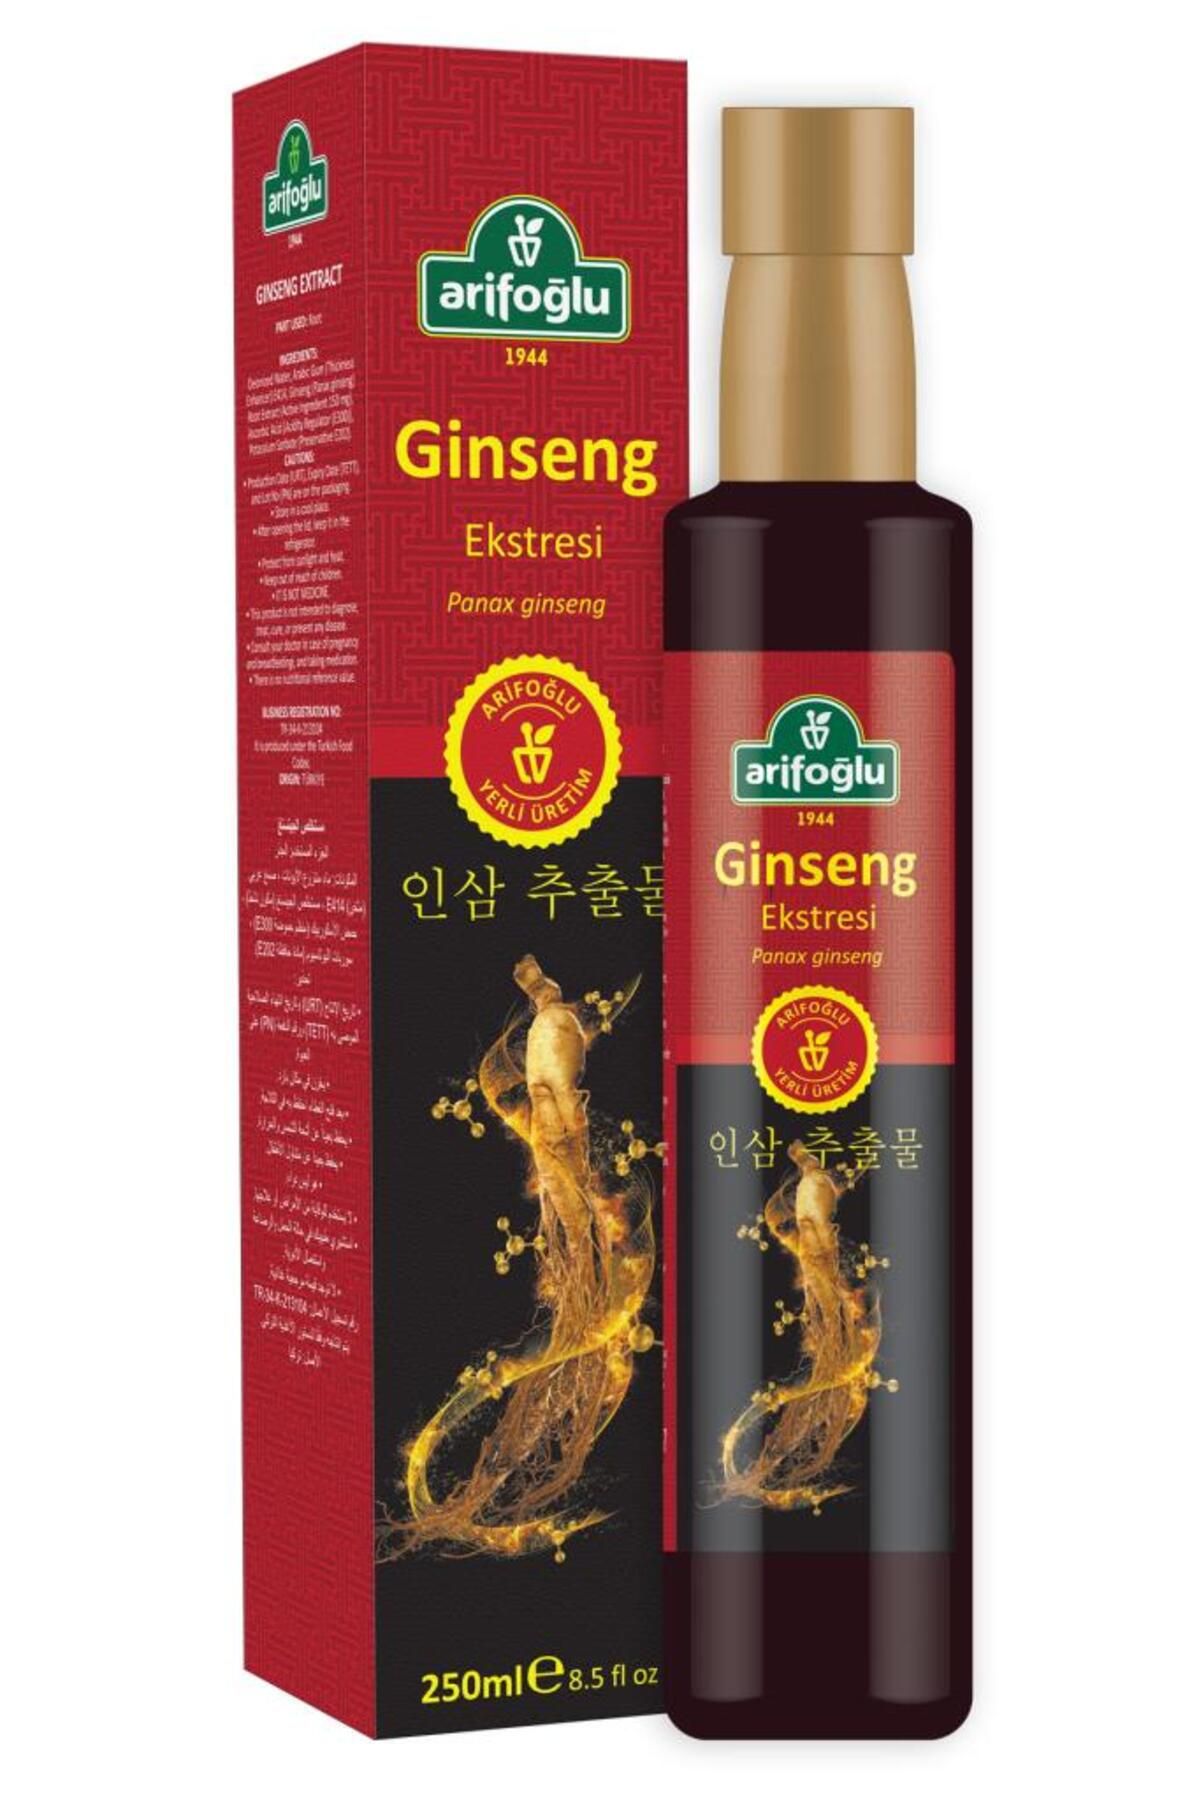 Arifoğlu Ginseng Ekstresi - Ginseng Ekstrakt 250ml Sıvı Kore Ginseng